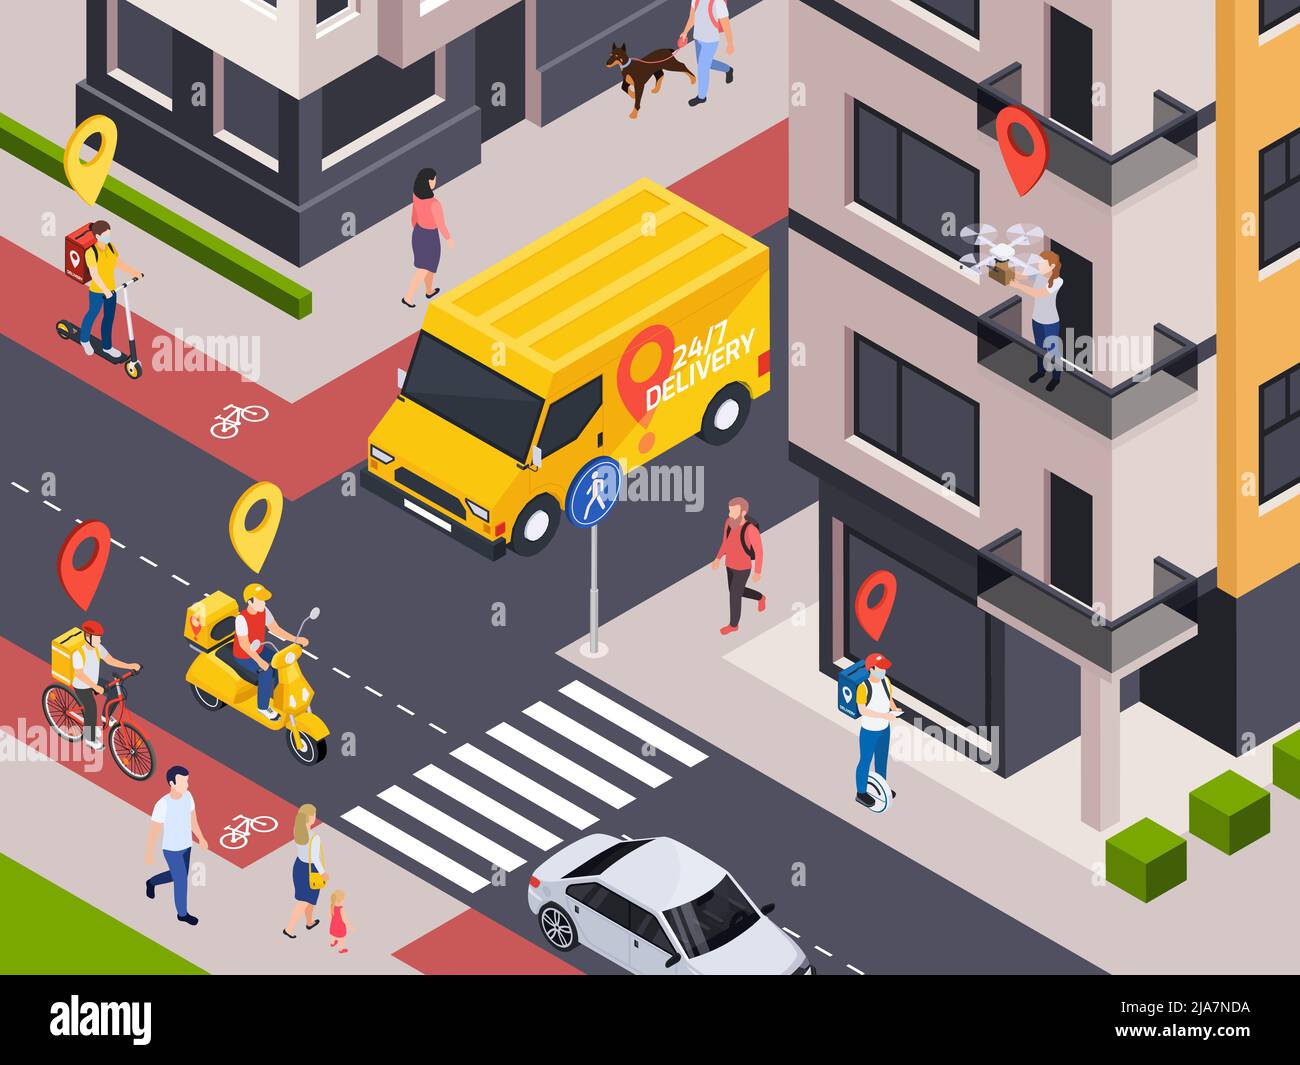 Lieferung Service isometrische Zusammensetzung mit Blick auf die Stadt Straße mit Ortsschildern über Kuriere und Kunden Vektor-Illustration Stock Vektor